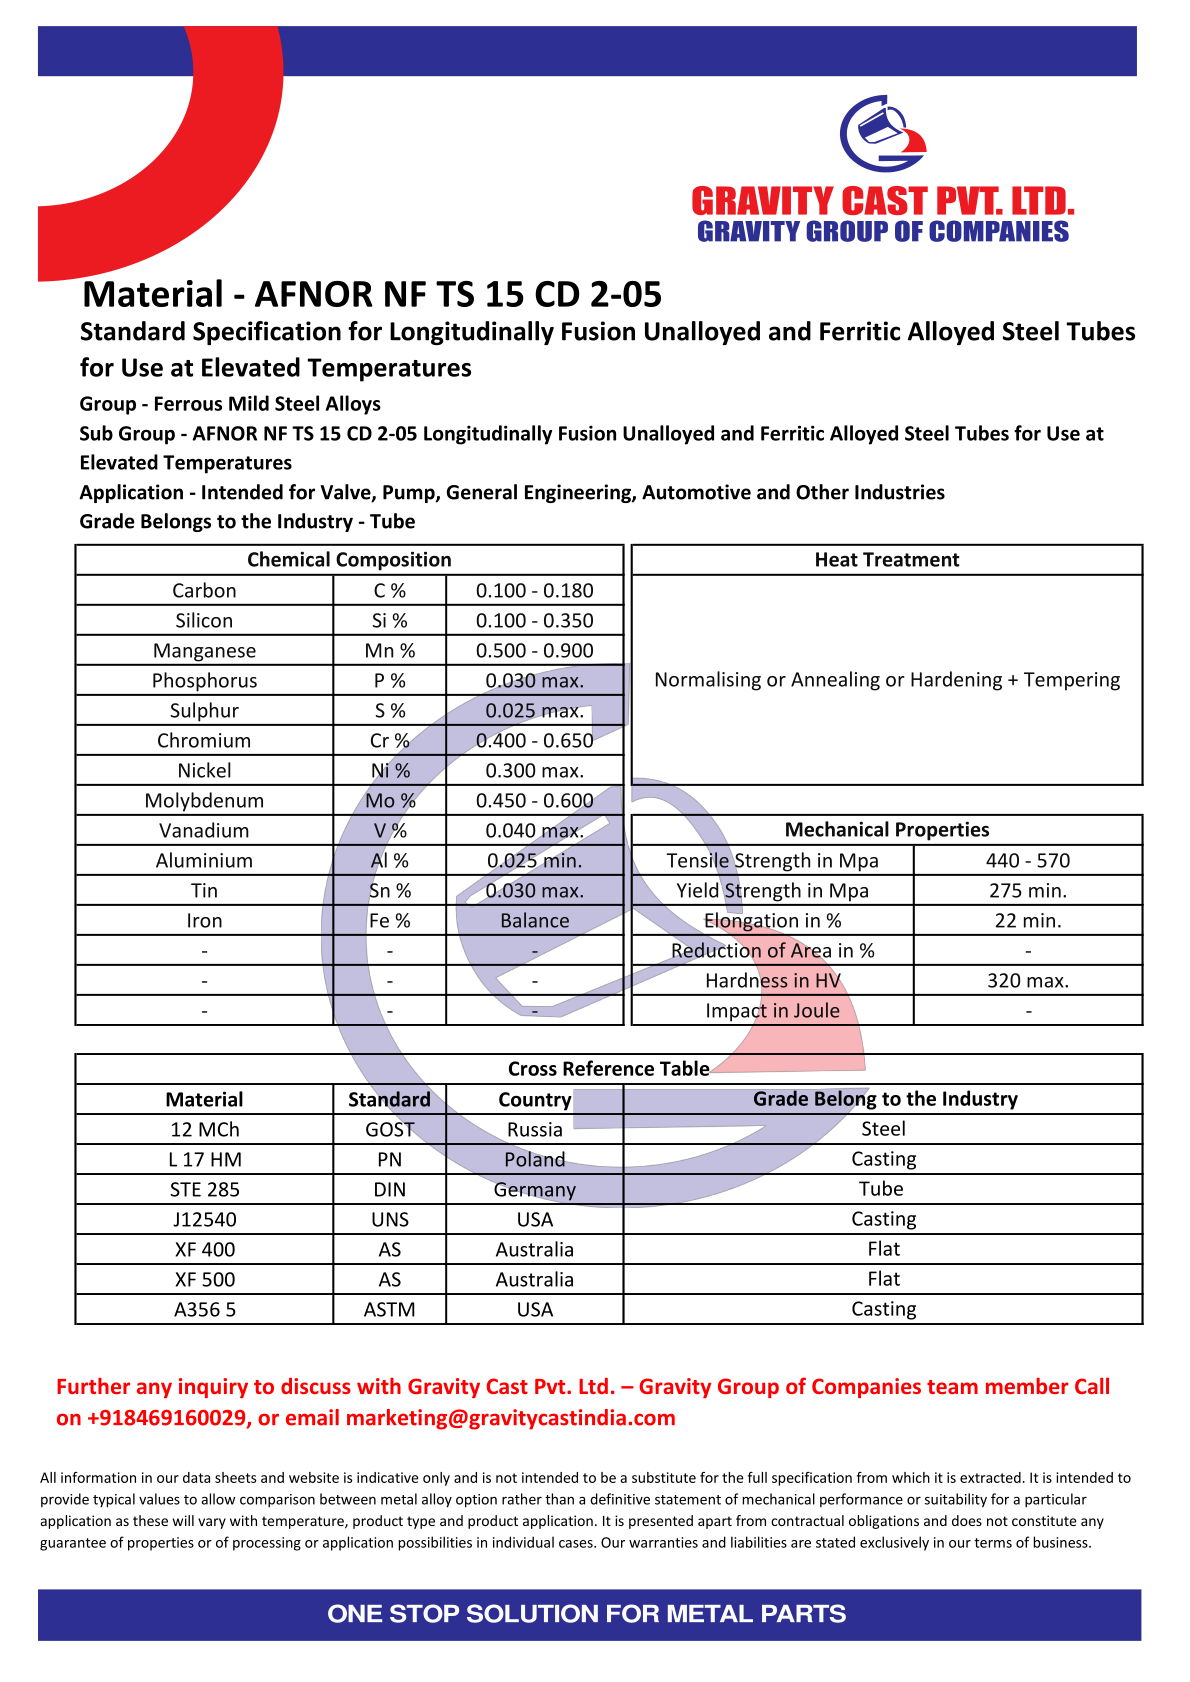 AFNOR NF TS 15 CD 2-05.pdf